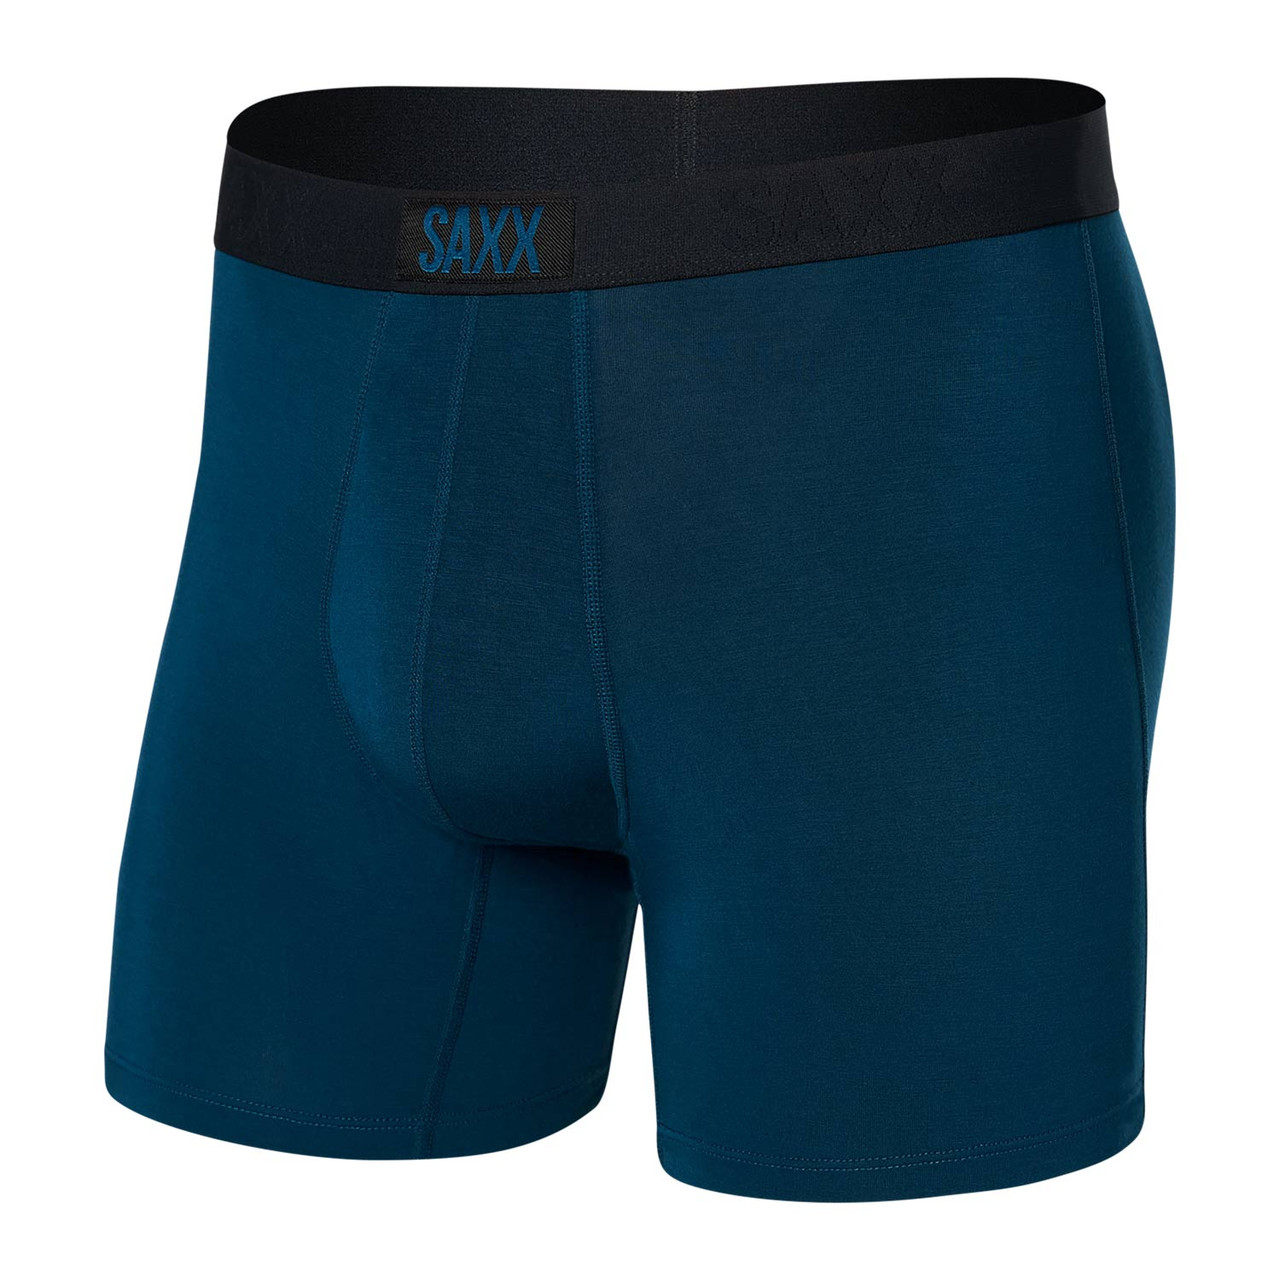 SAXX Underwear Vibe Super Soft Boxer Heathered Briefs